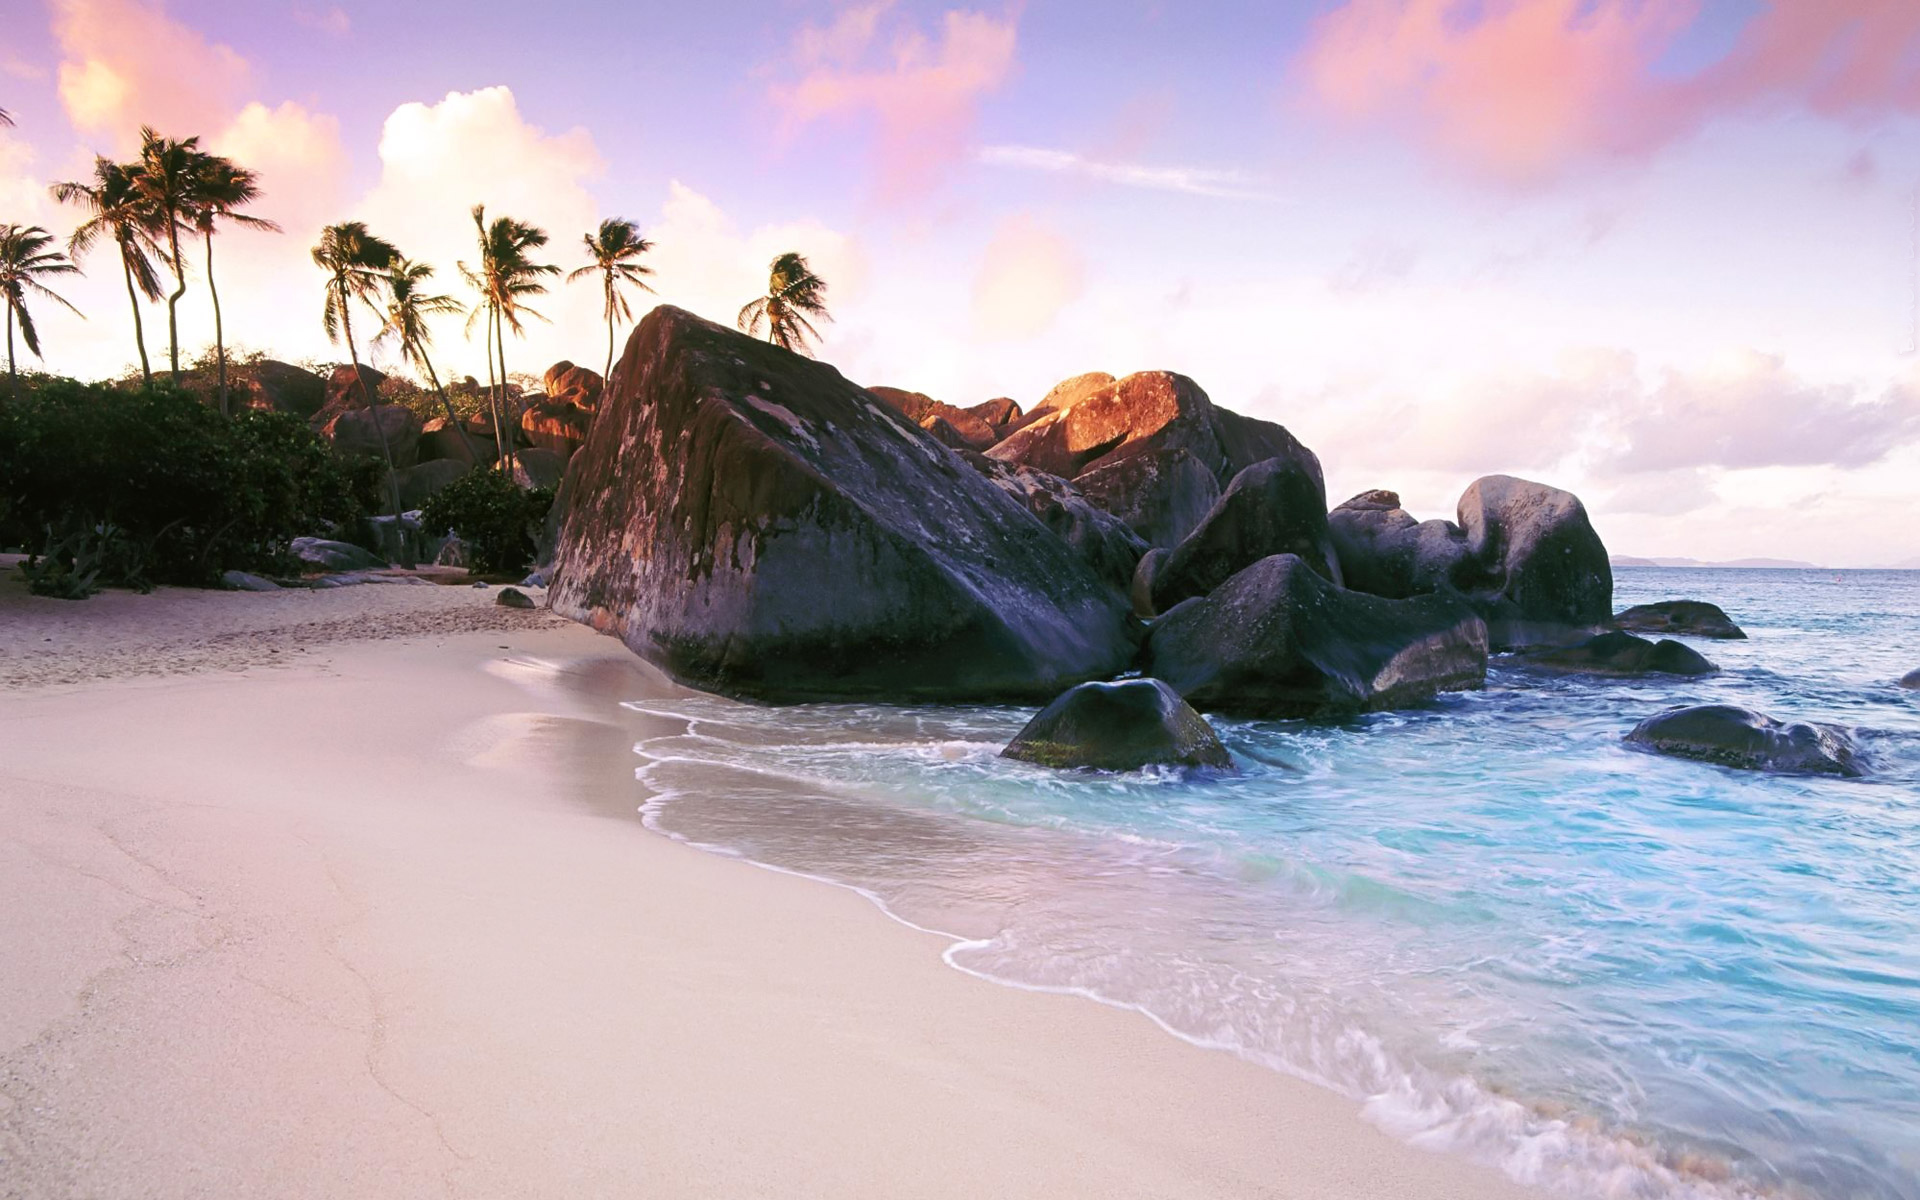 Download - British Virgin Islands , HD Wallpaper & Backgrounds